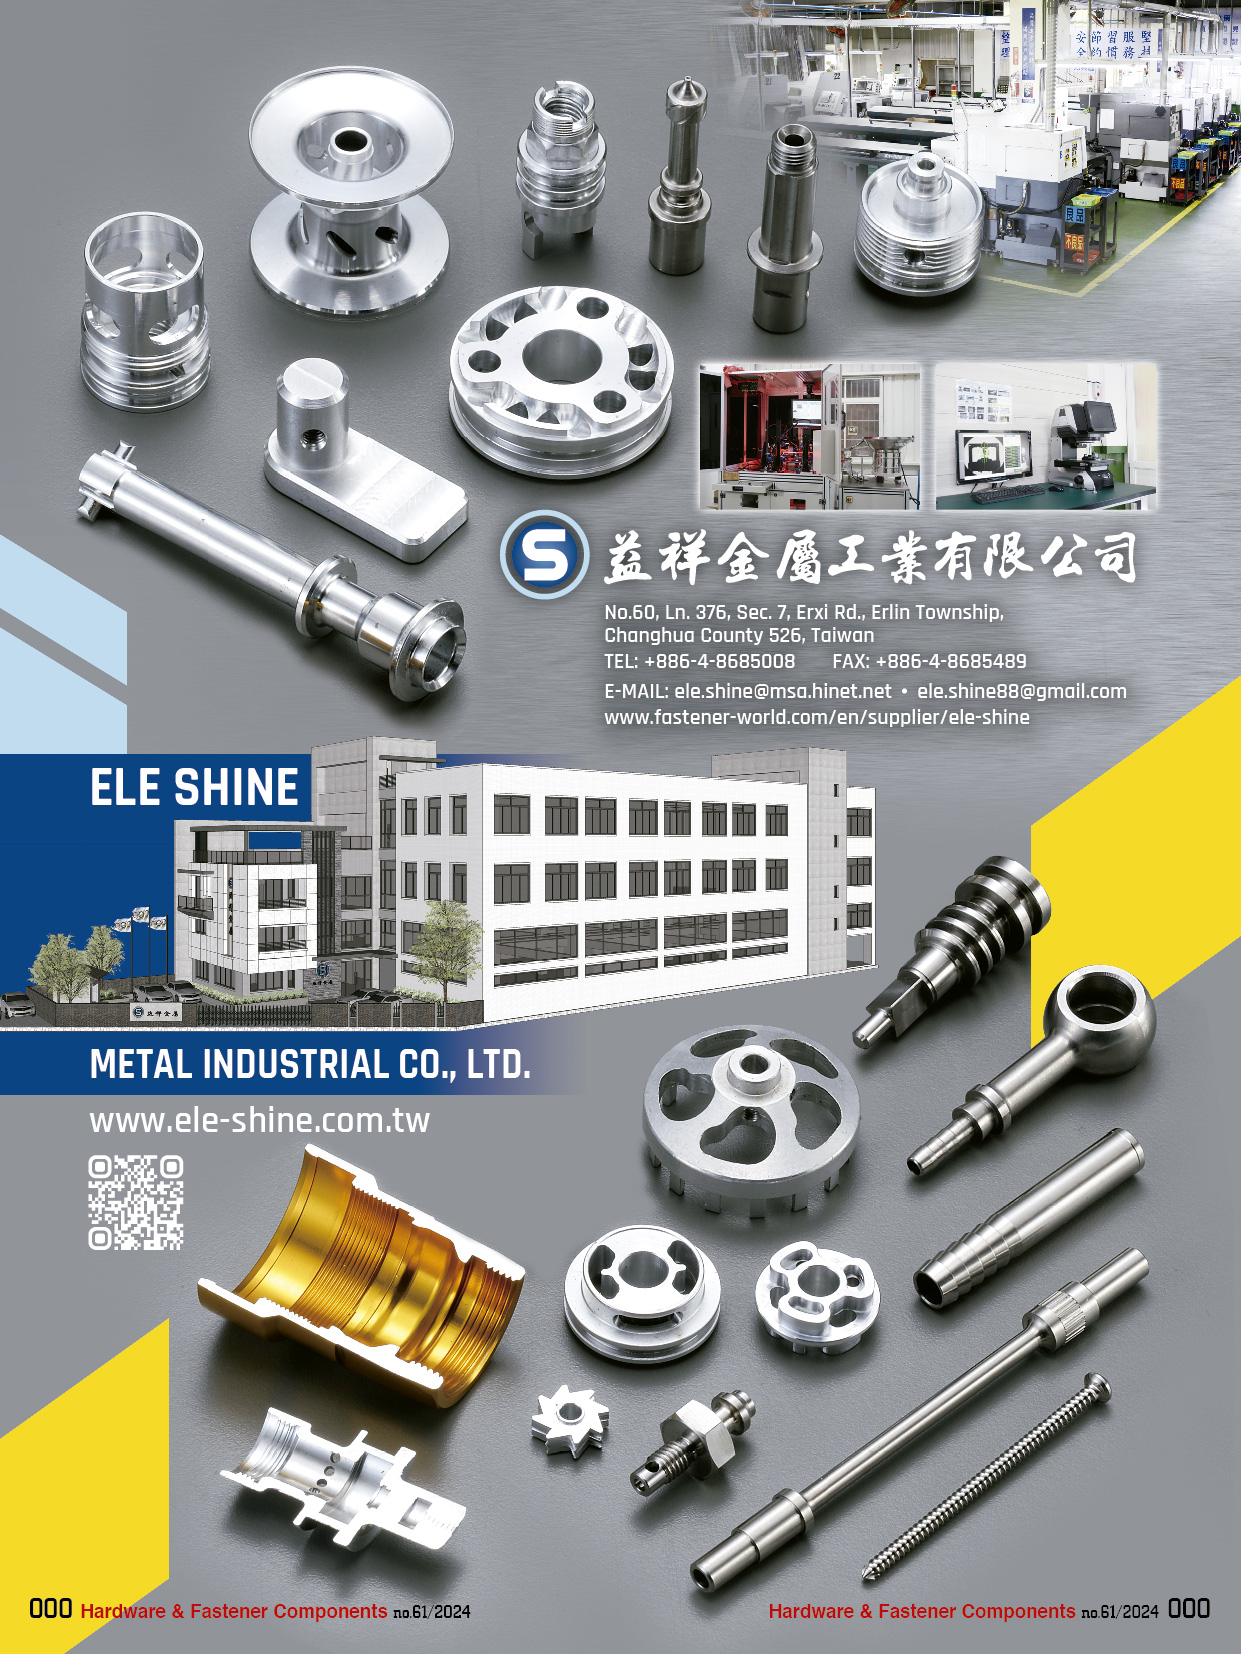 ELE SHINE METAL INDUSTRIAL CO., LTD. ,  CNC Automatic Lathes, Computer Precision Metal Parts 